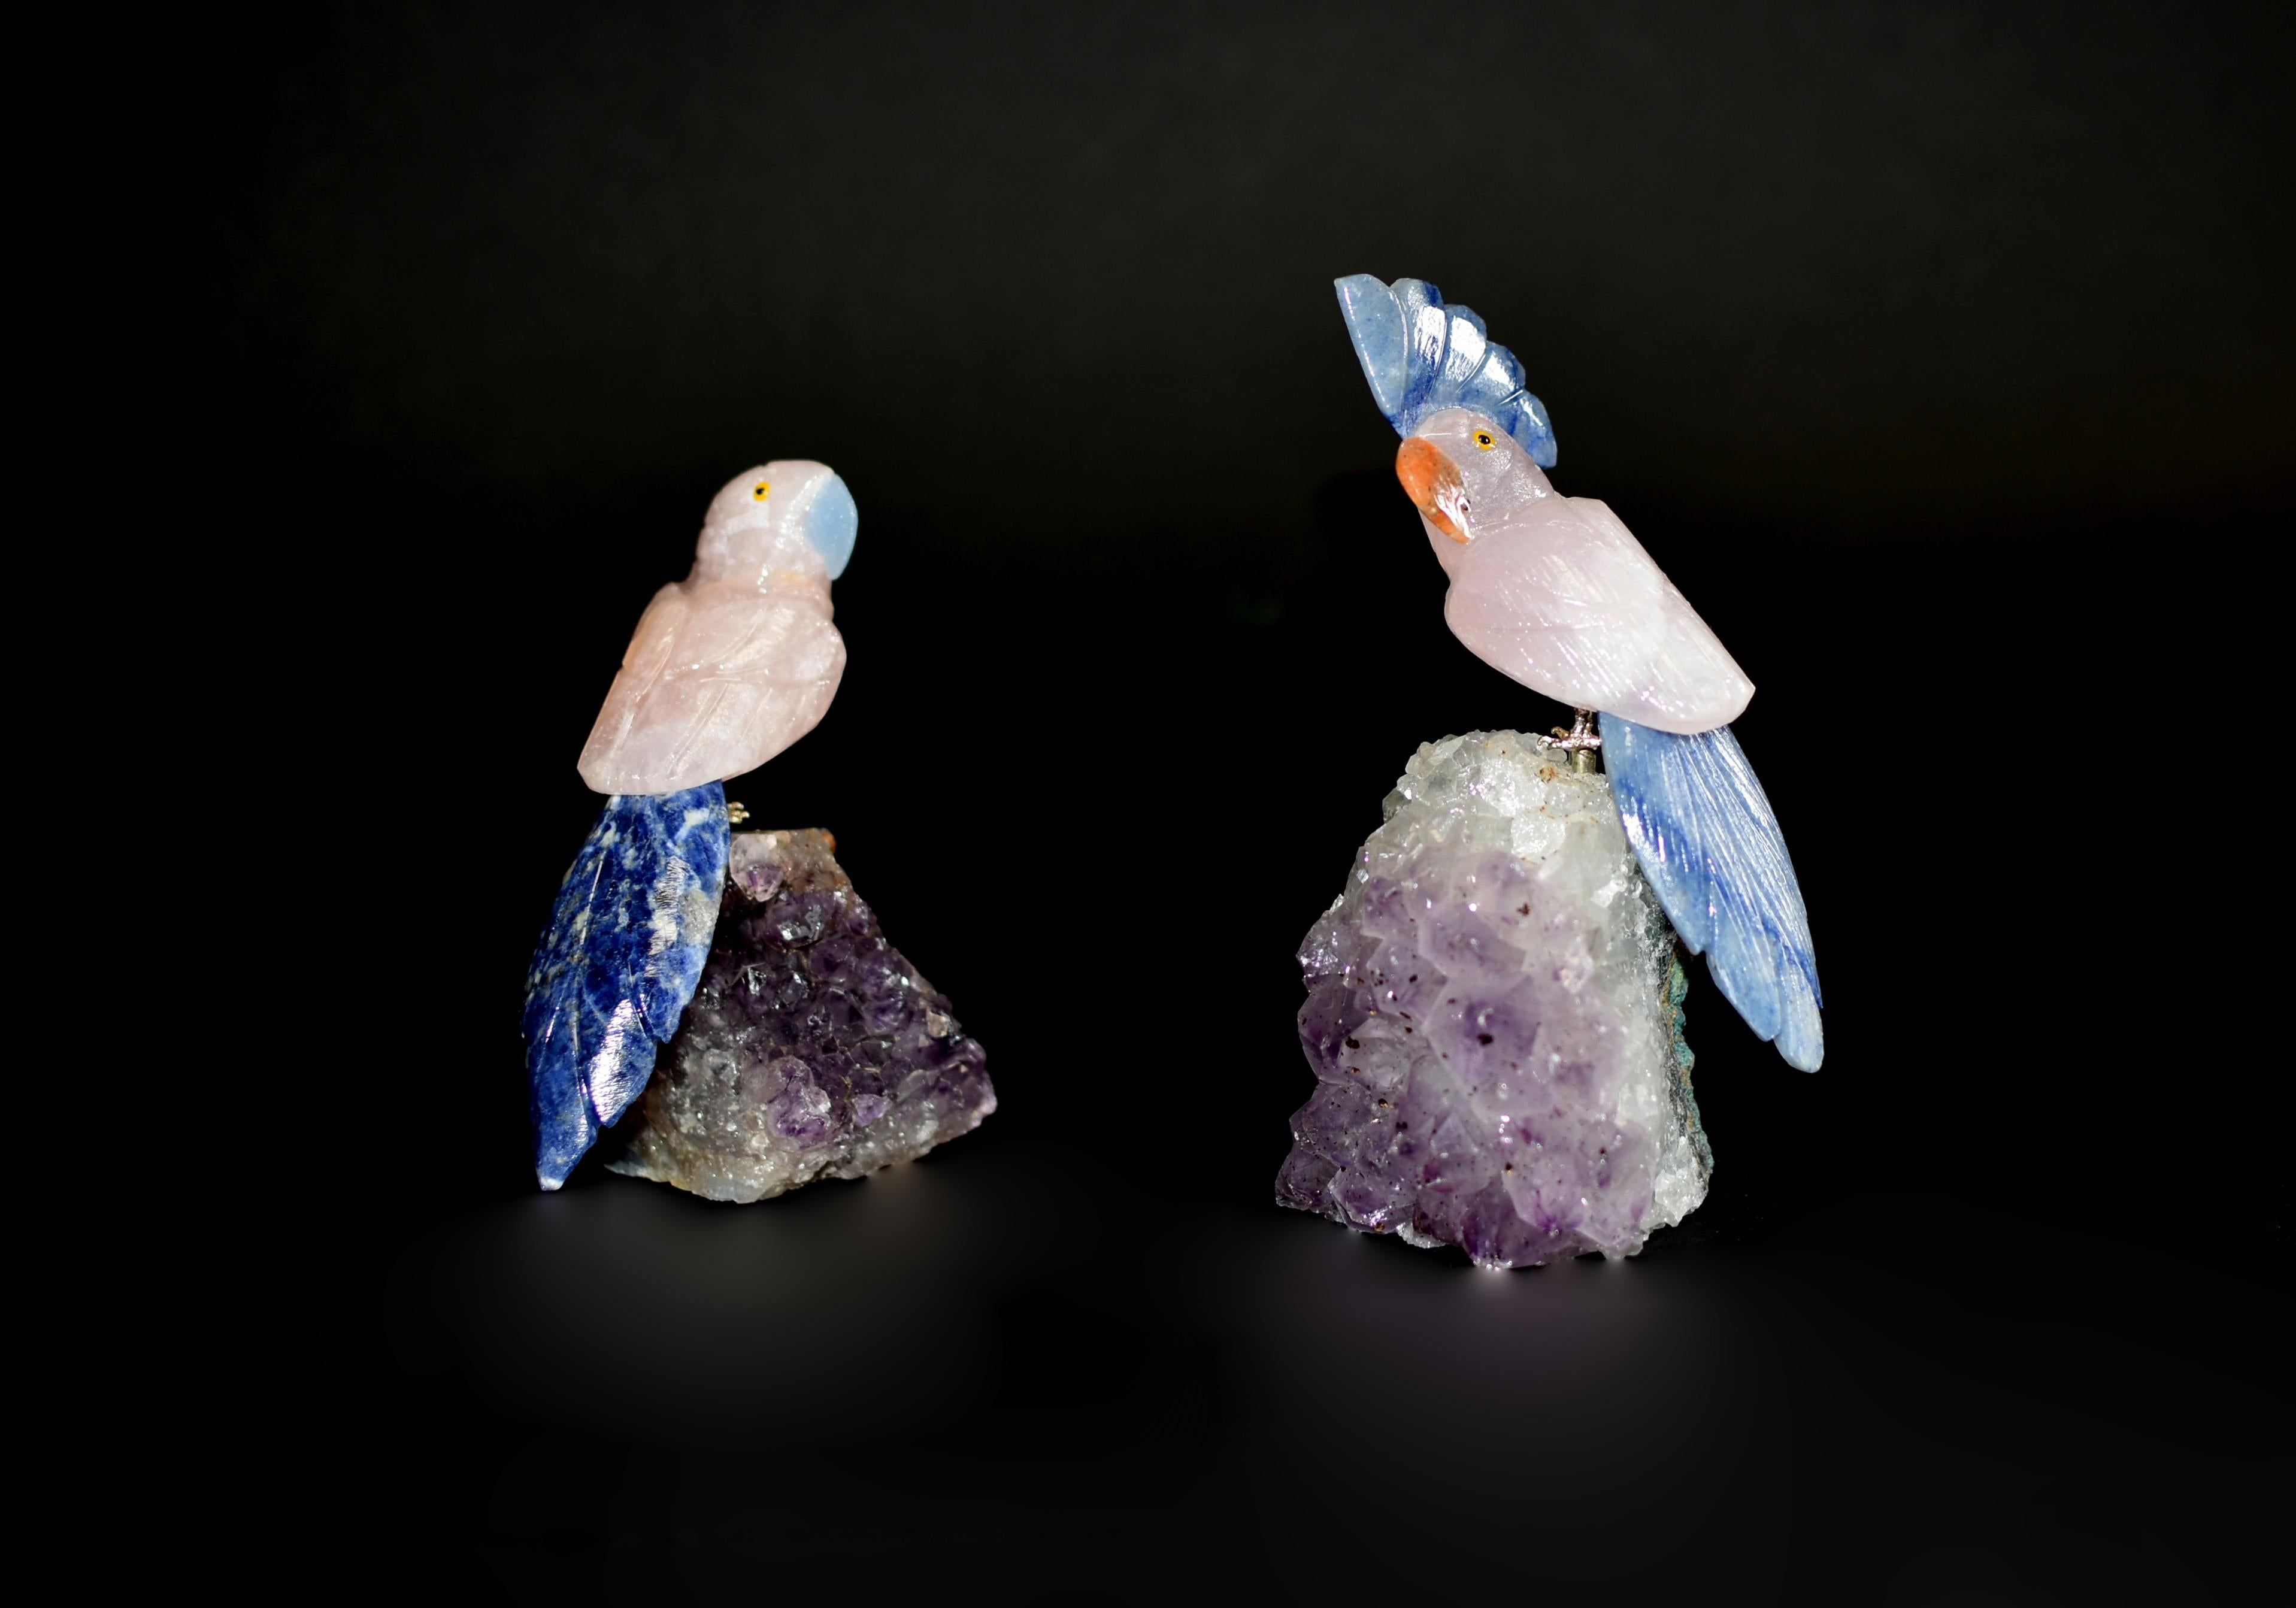 Deux perroquets en quartz rose perchés sur des grappes d'améthyste. Modelé de façon réaliste avec une expression curieuse et amusante, avec un plumage en quartz rose naturel et des queues en sodalite bleue. Faîtes de calcite bleue et orange. Les